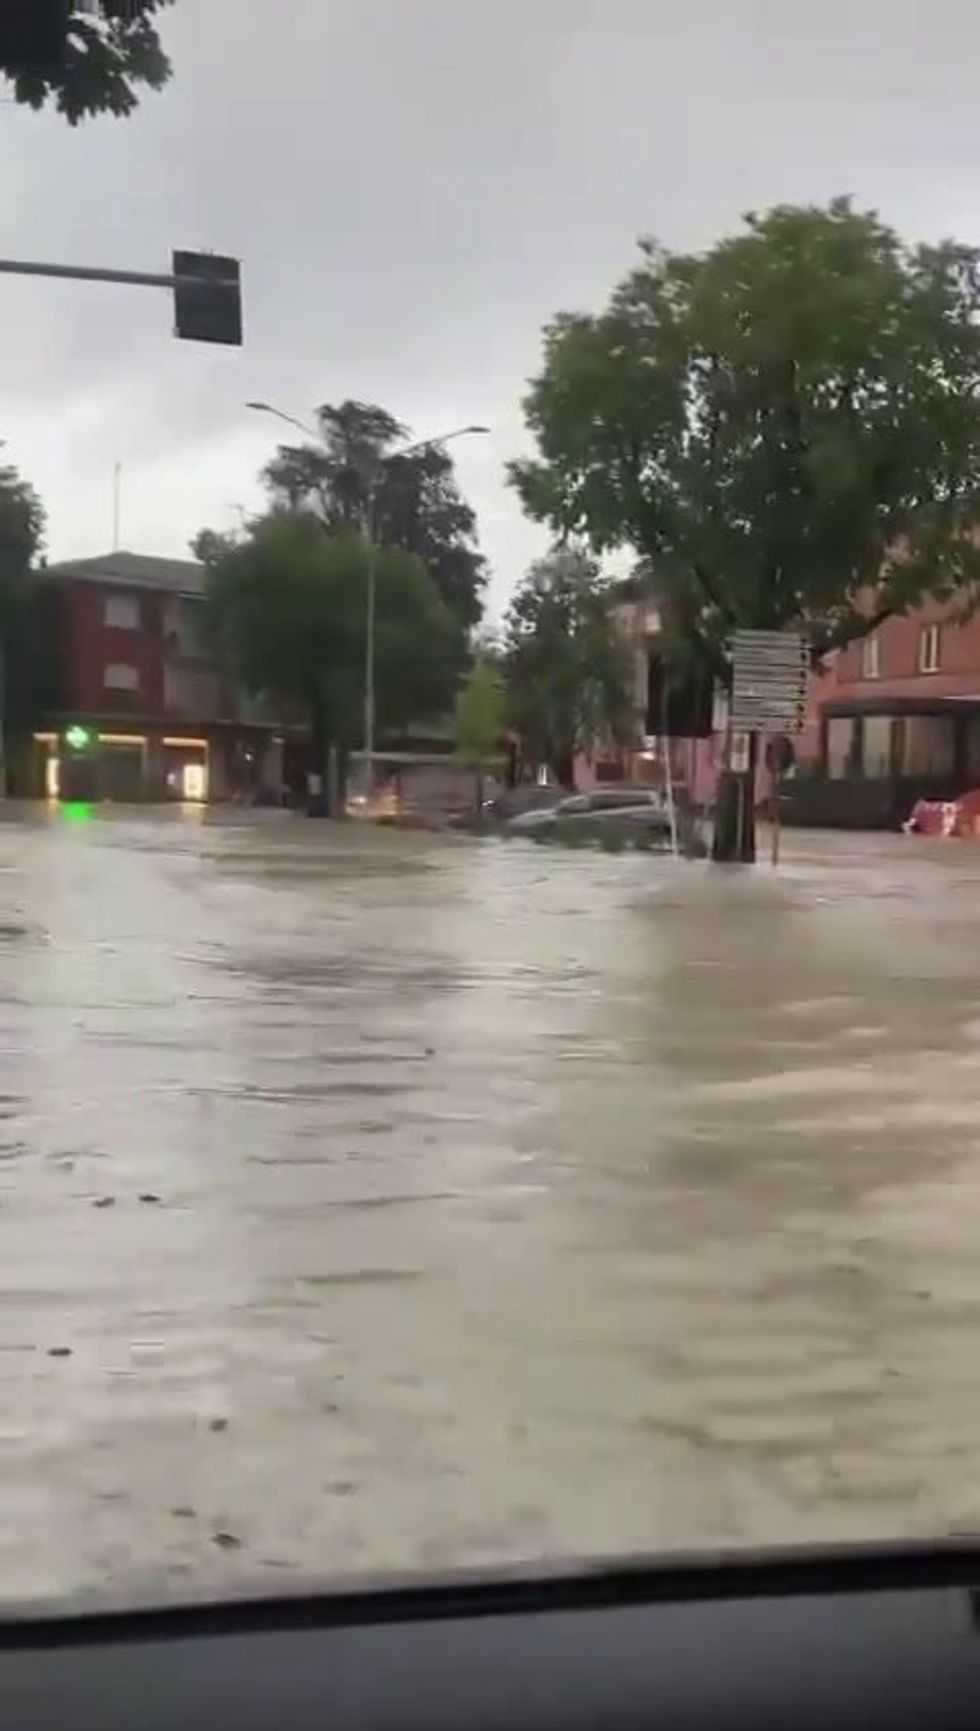 Allagamenti ed inondazioni in Emilia Romagna | video